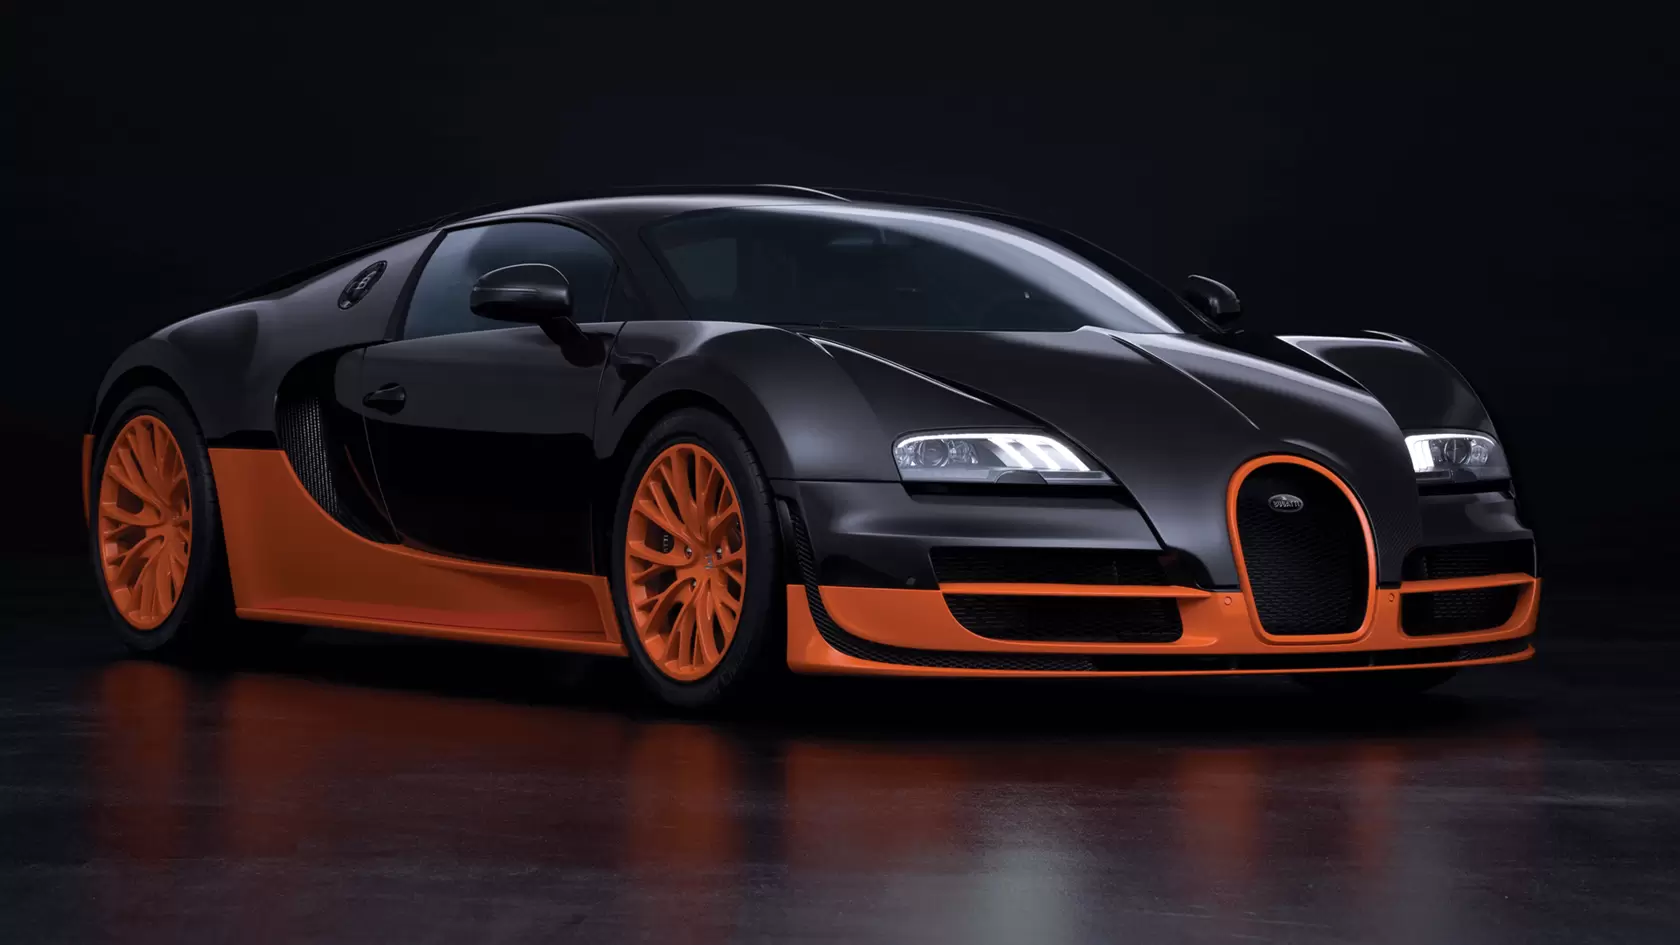 Orange Bugatti Veyron Front View